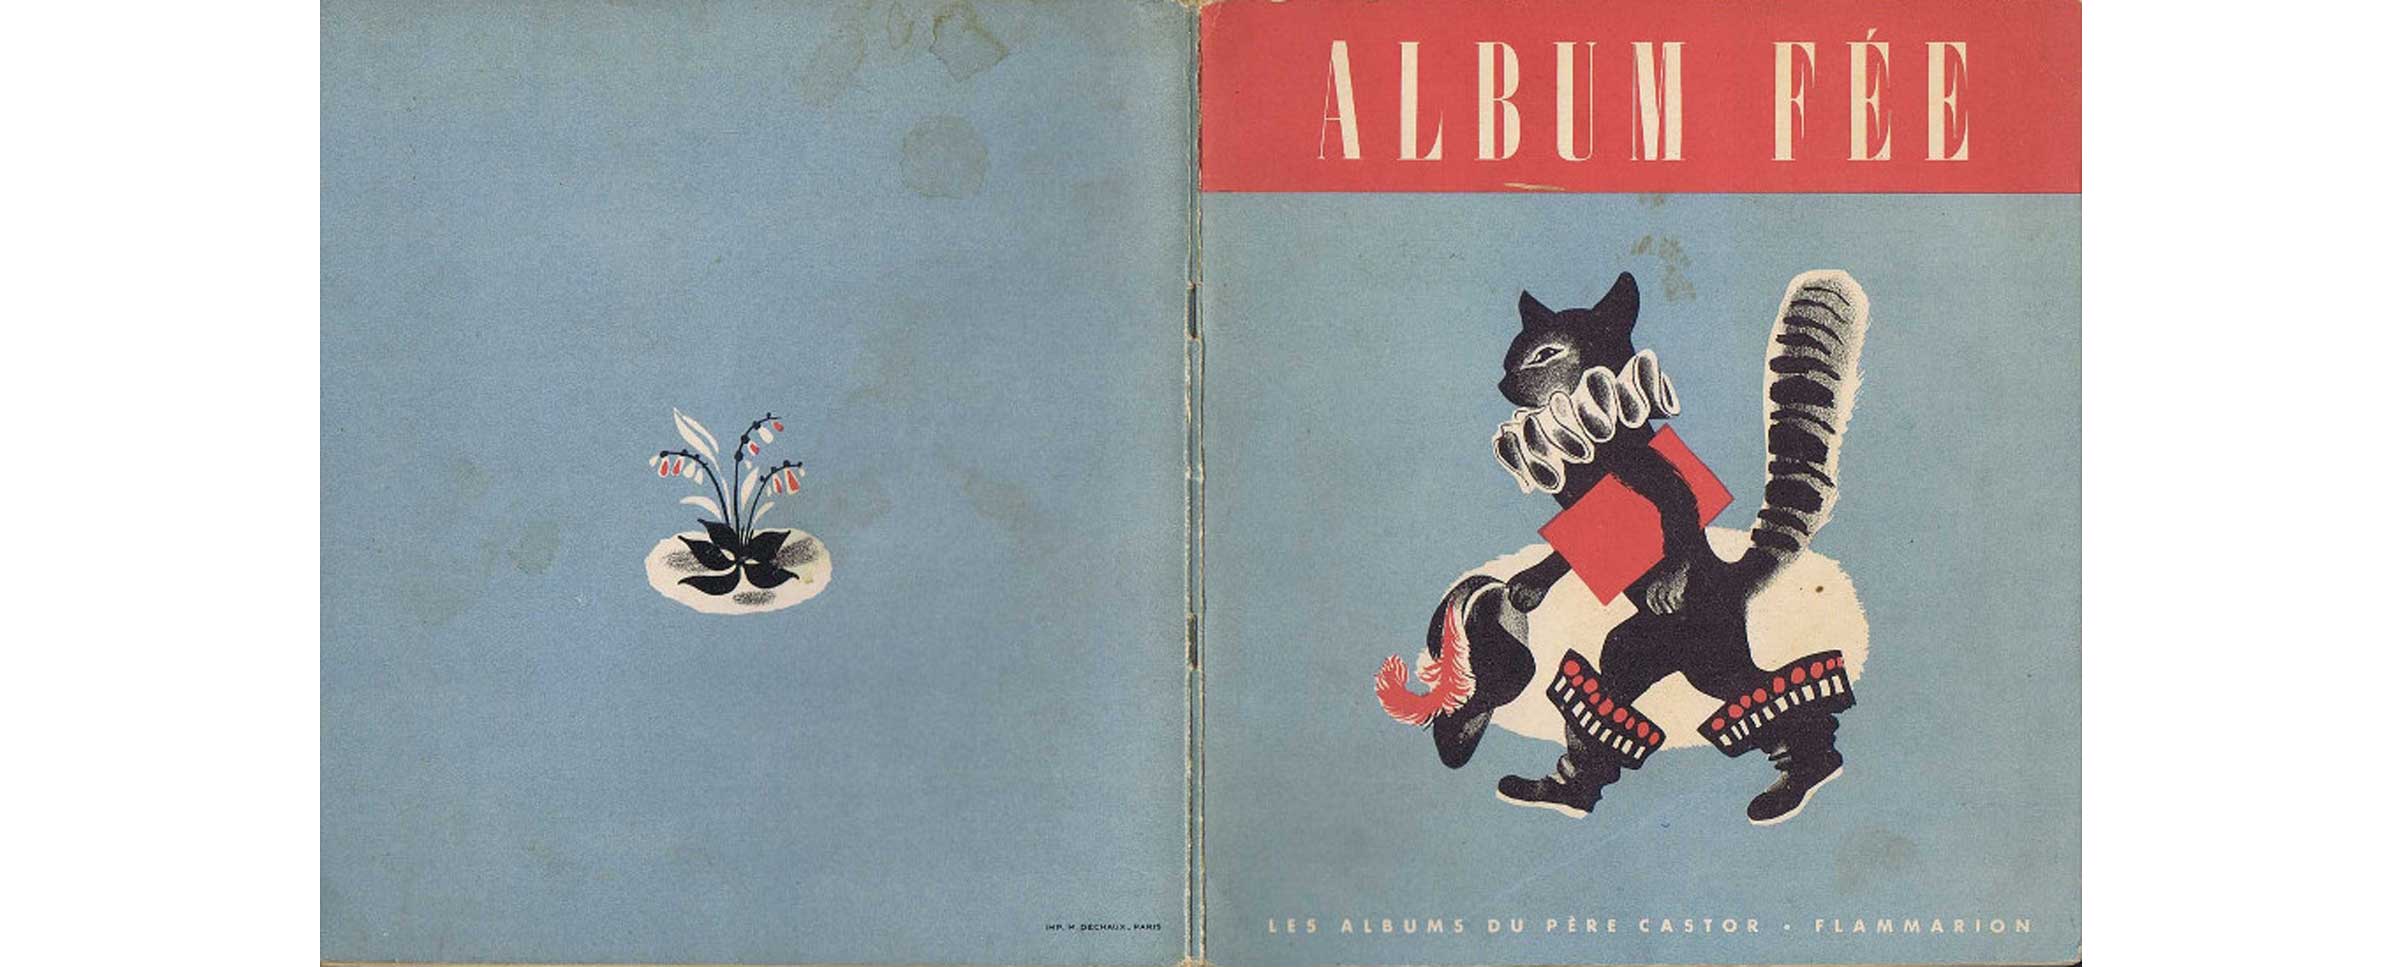 album-fee-du-pere-castor-1950-couverture